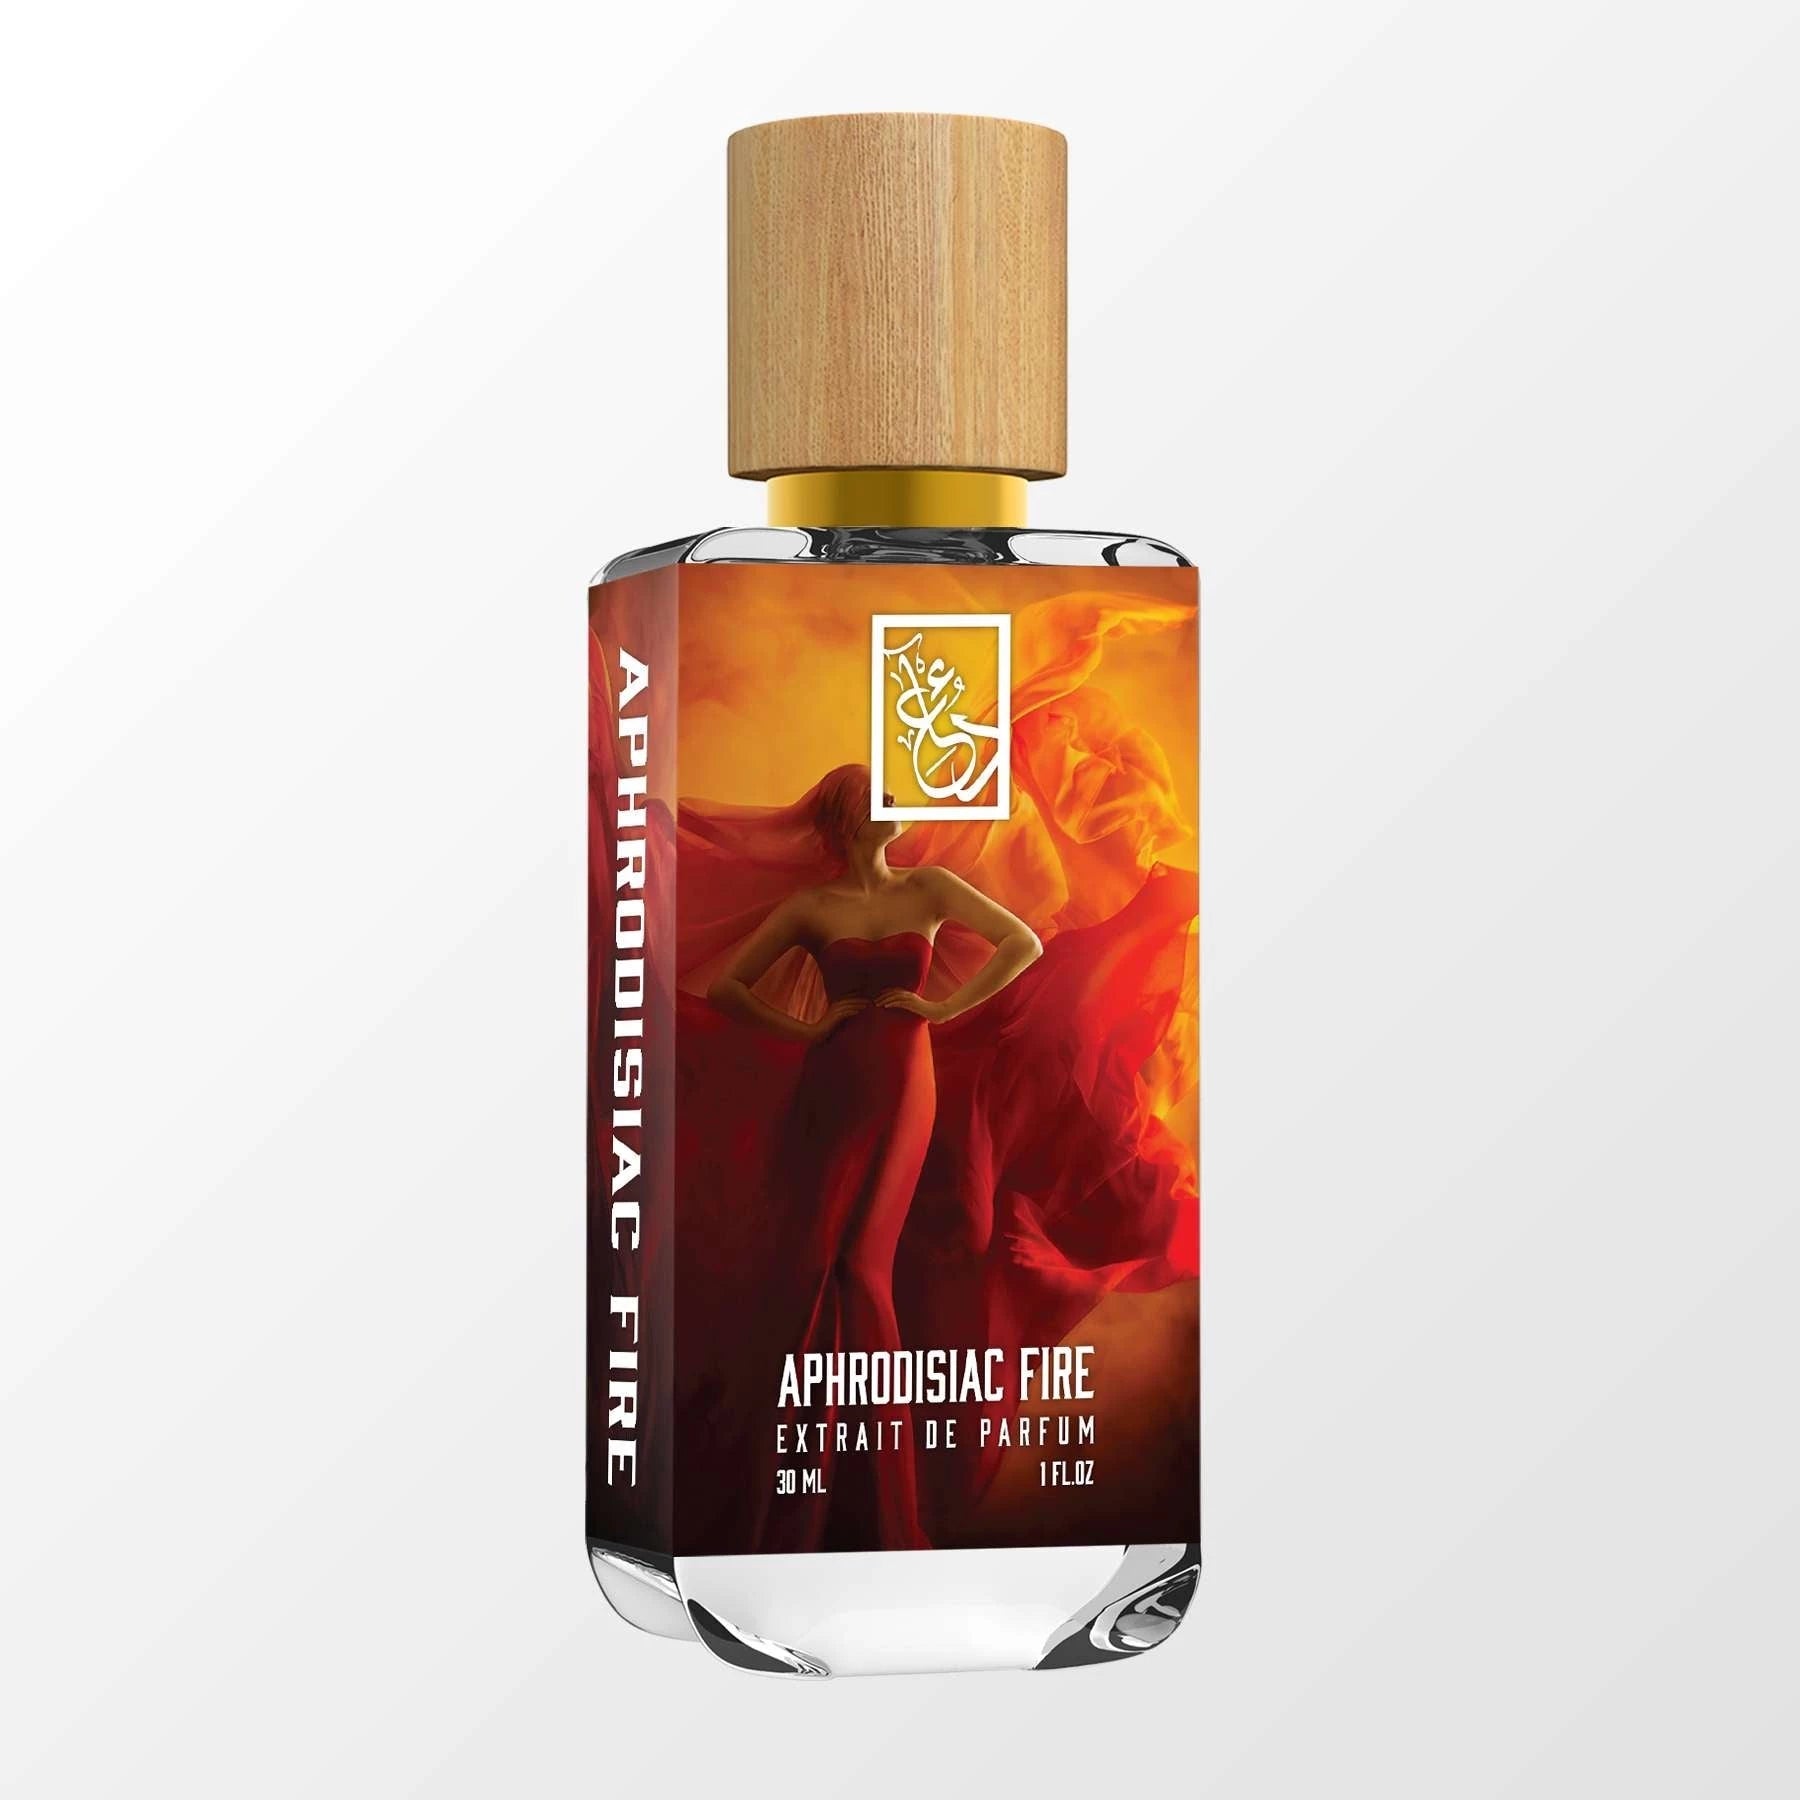 Aphrodisiac Fire - Dua Fragrances - Floral Oriental - Unisex Perfume - 34ml/1.1 fl oz - Extrait de Parfum